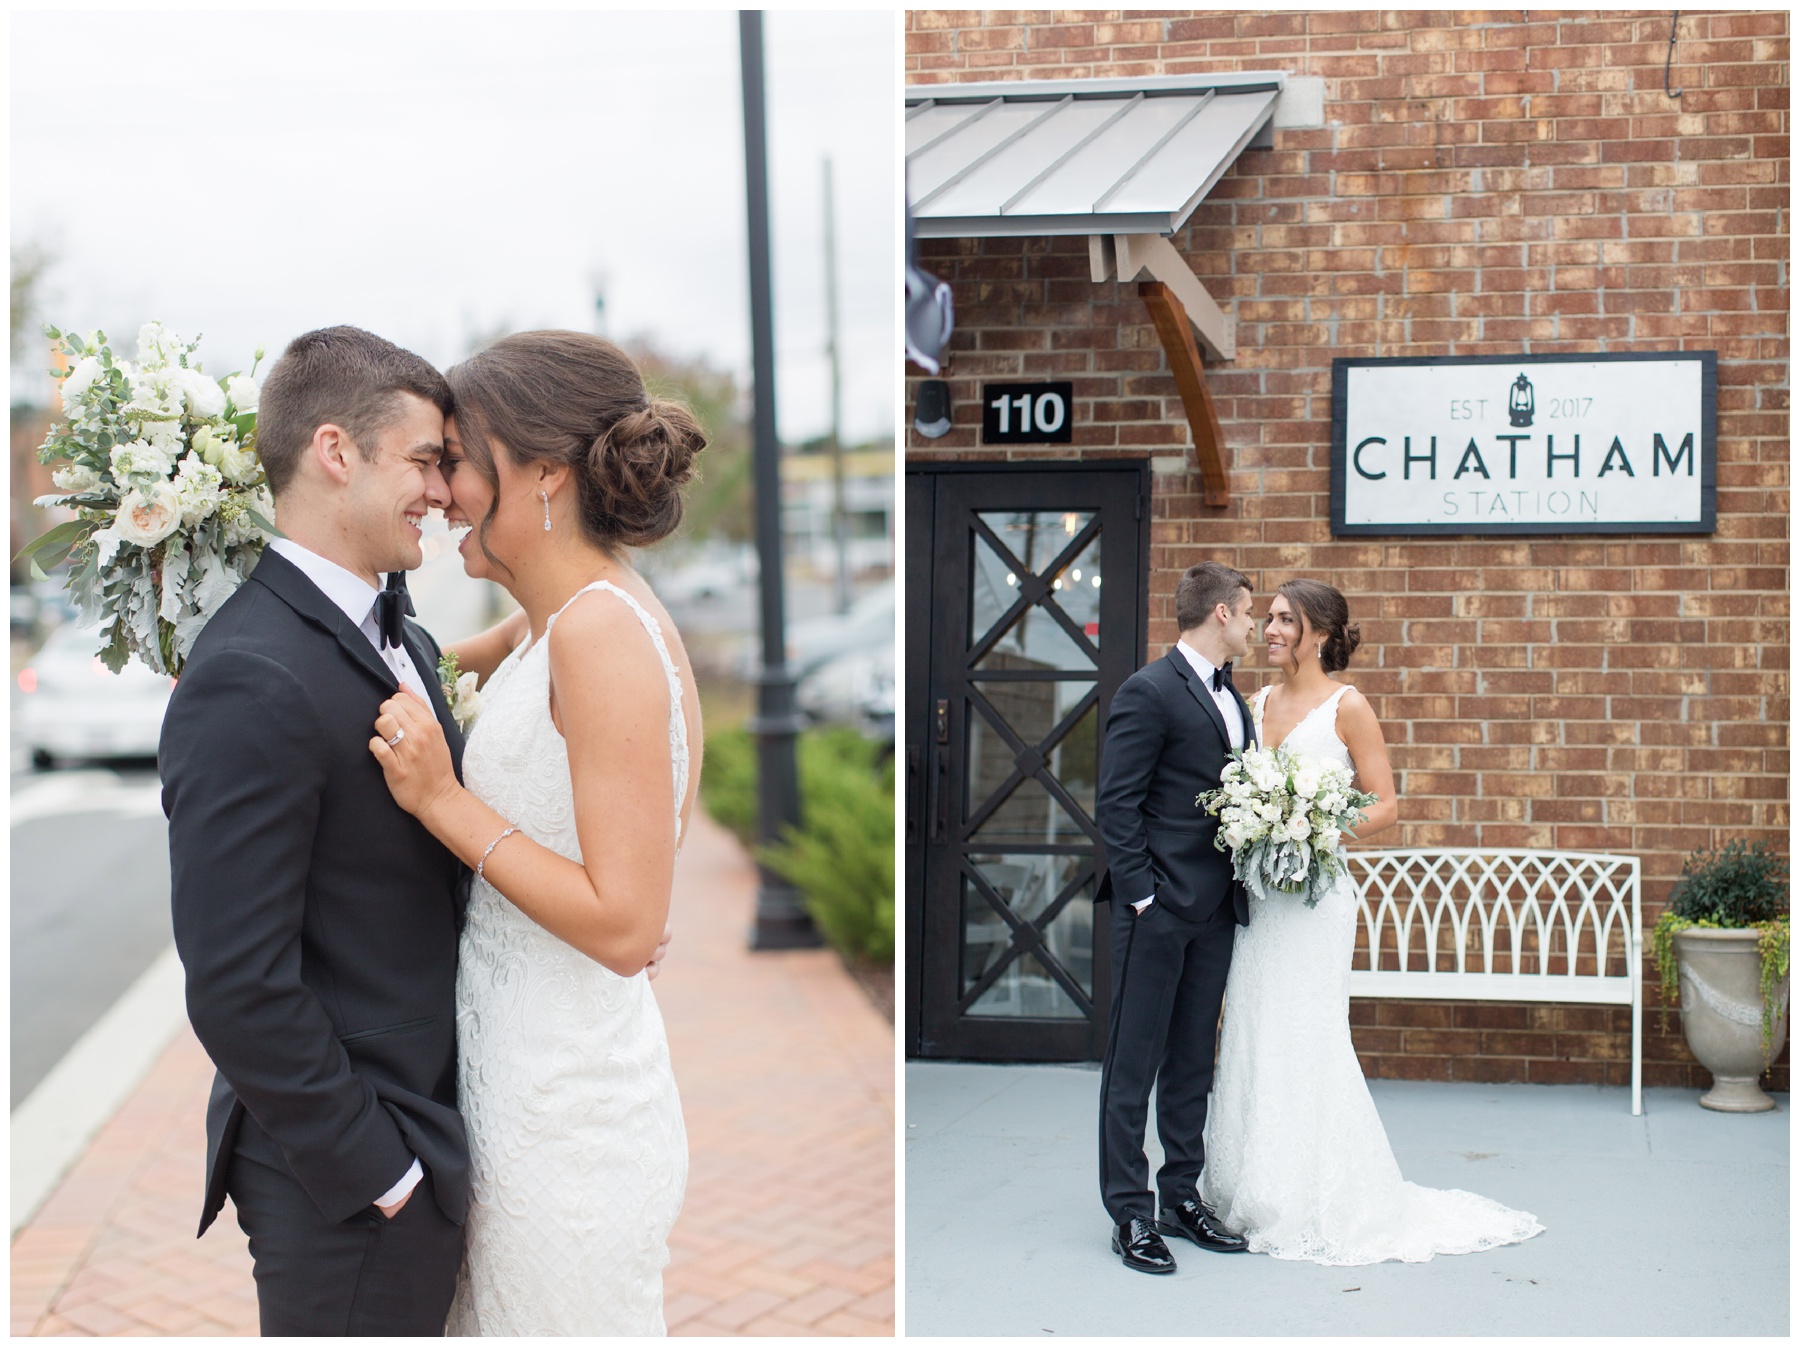 Chatham Station Wedding Photographer